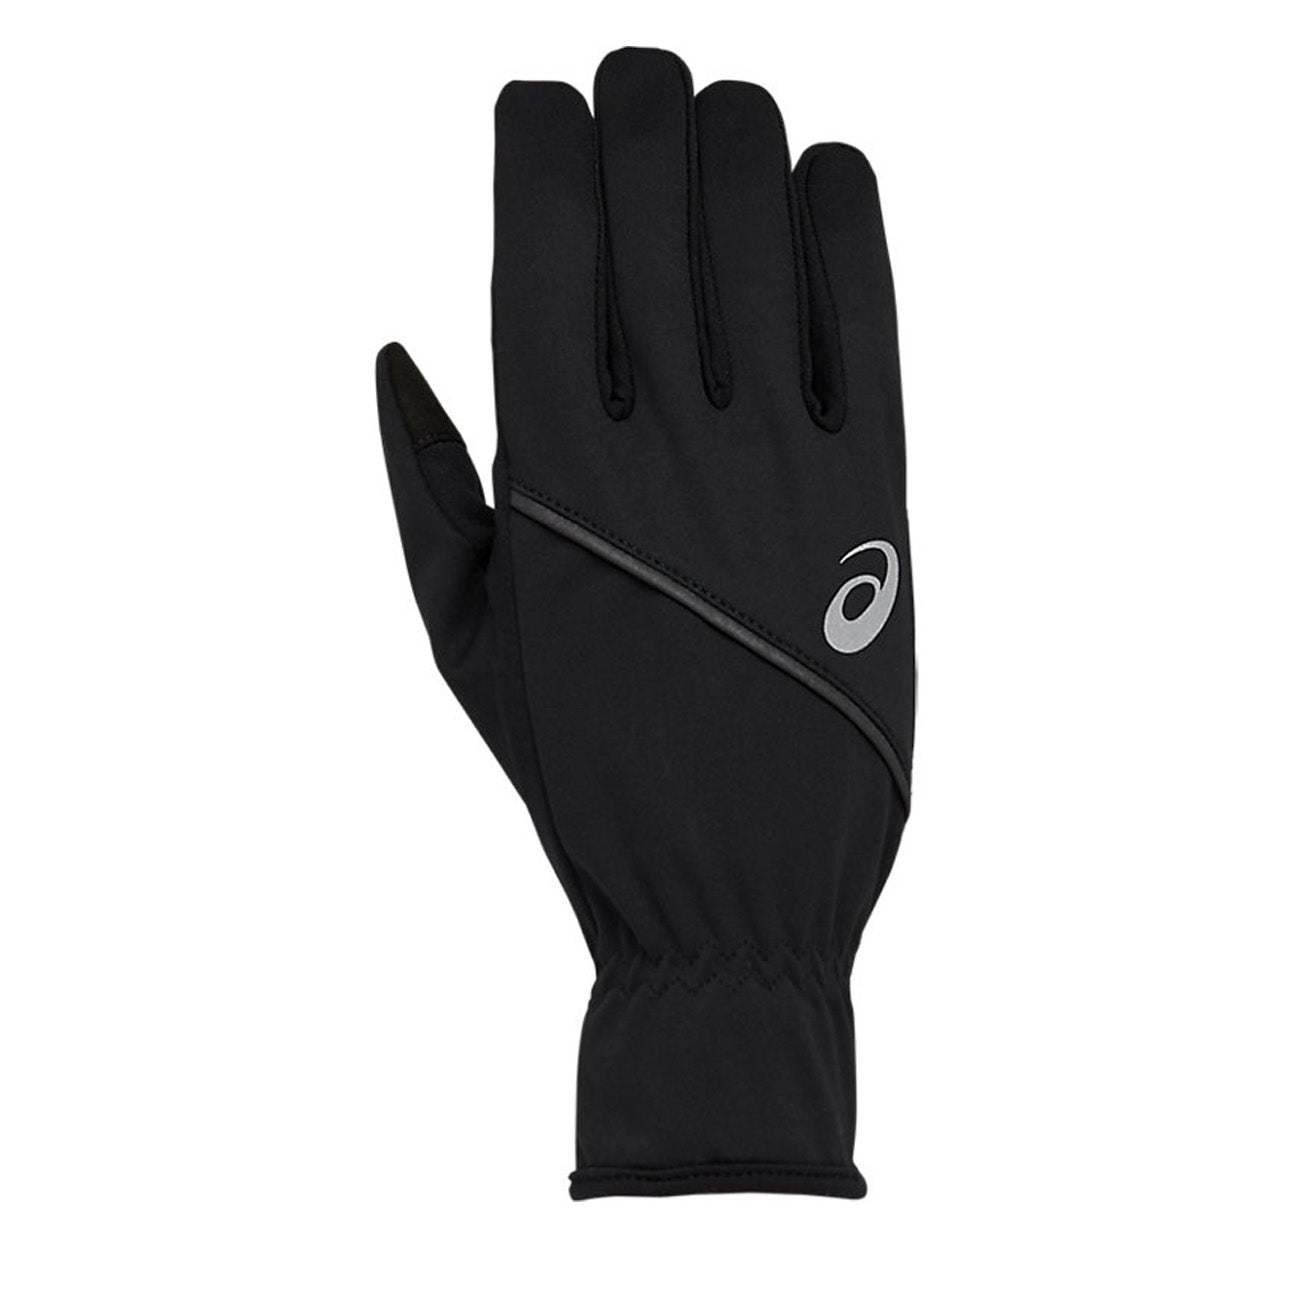 Gloves – Performance Thermal Runster Black Asics